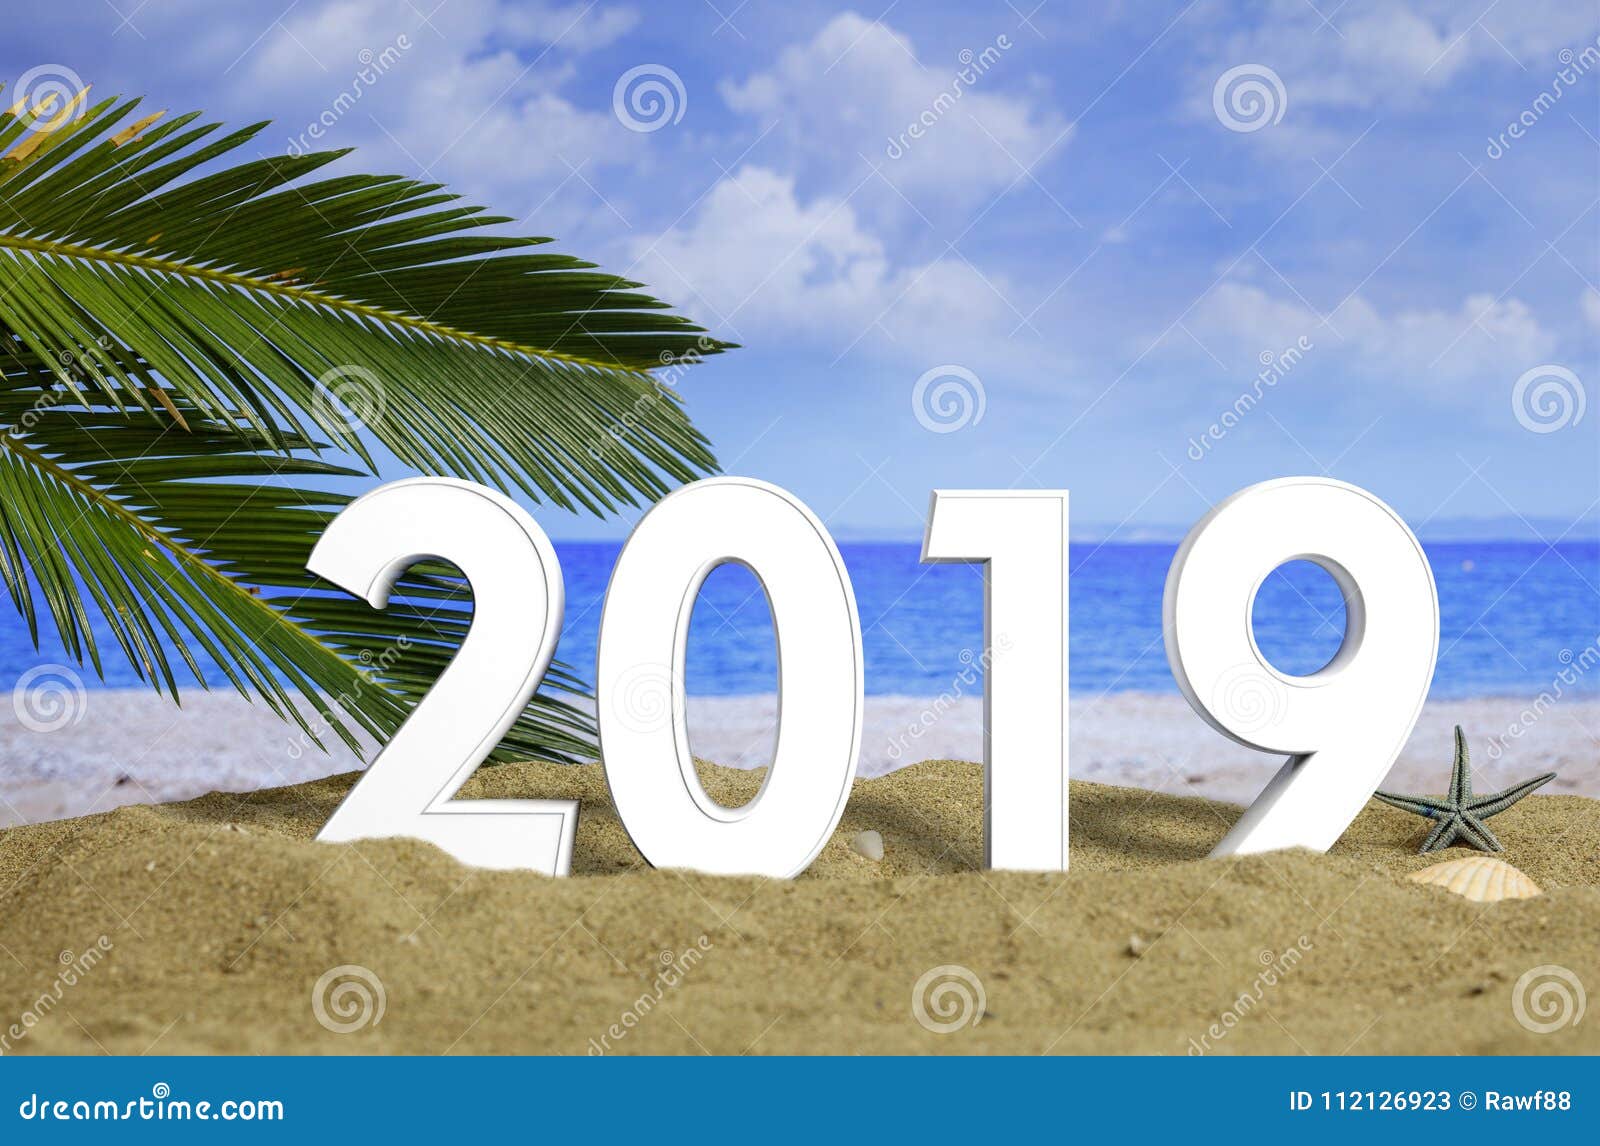 Celebración 2019 En La Playa, Vacaciones Del Año Nuevo Verano Ilustración 3D Imagen de archivo - Imagen de turismo, vacaciones: 112126923